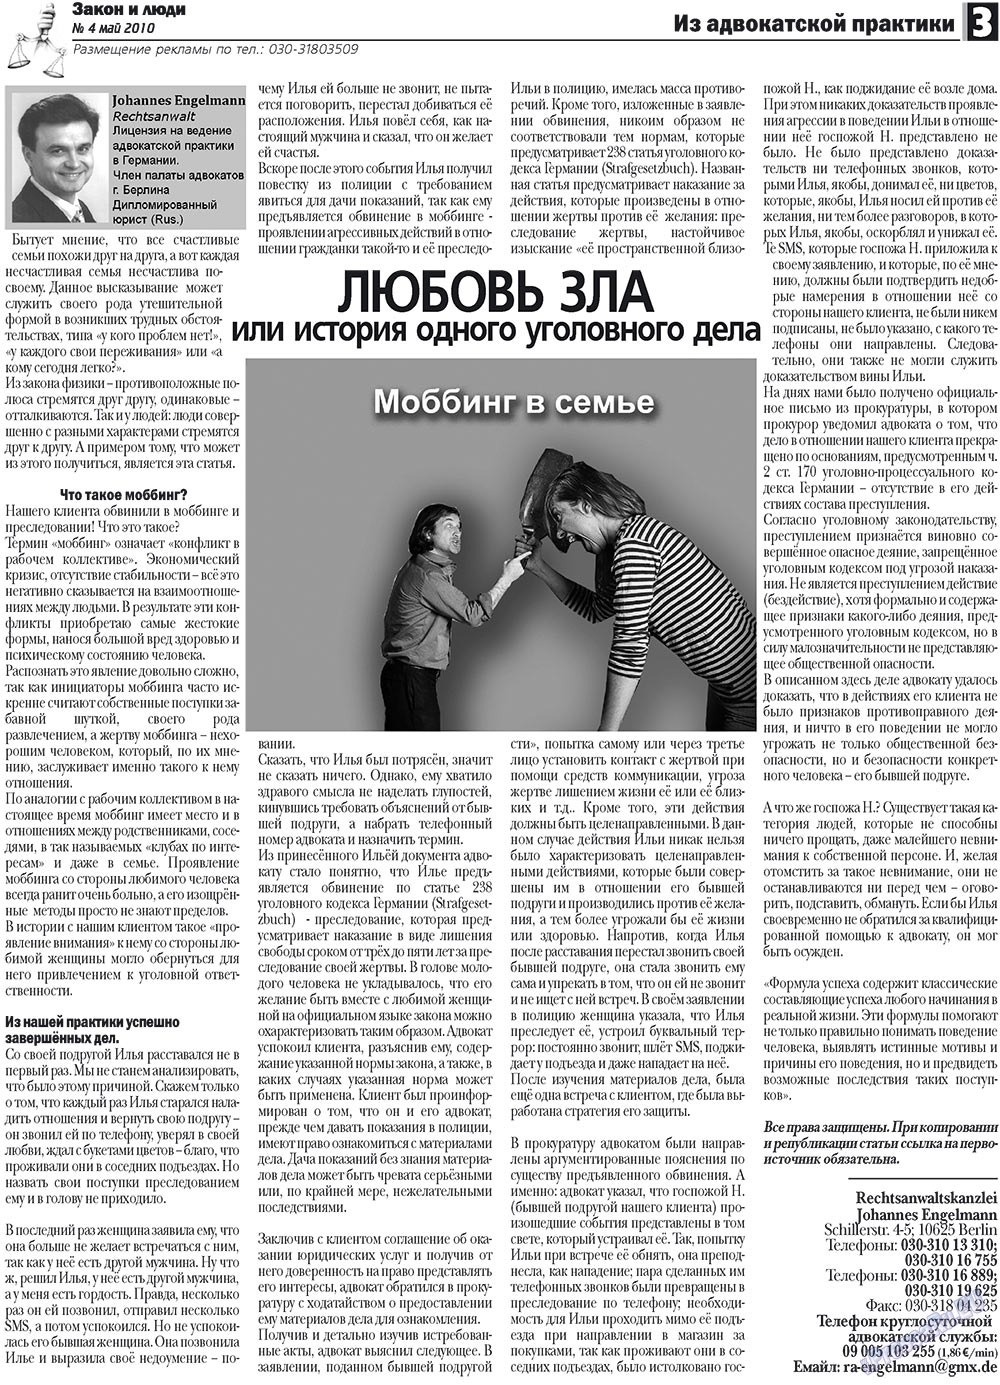 Закон и люди, газета. 2010 №4 стр.3